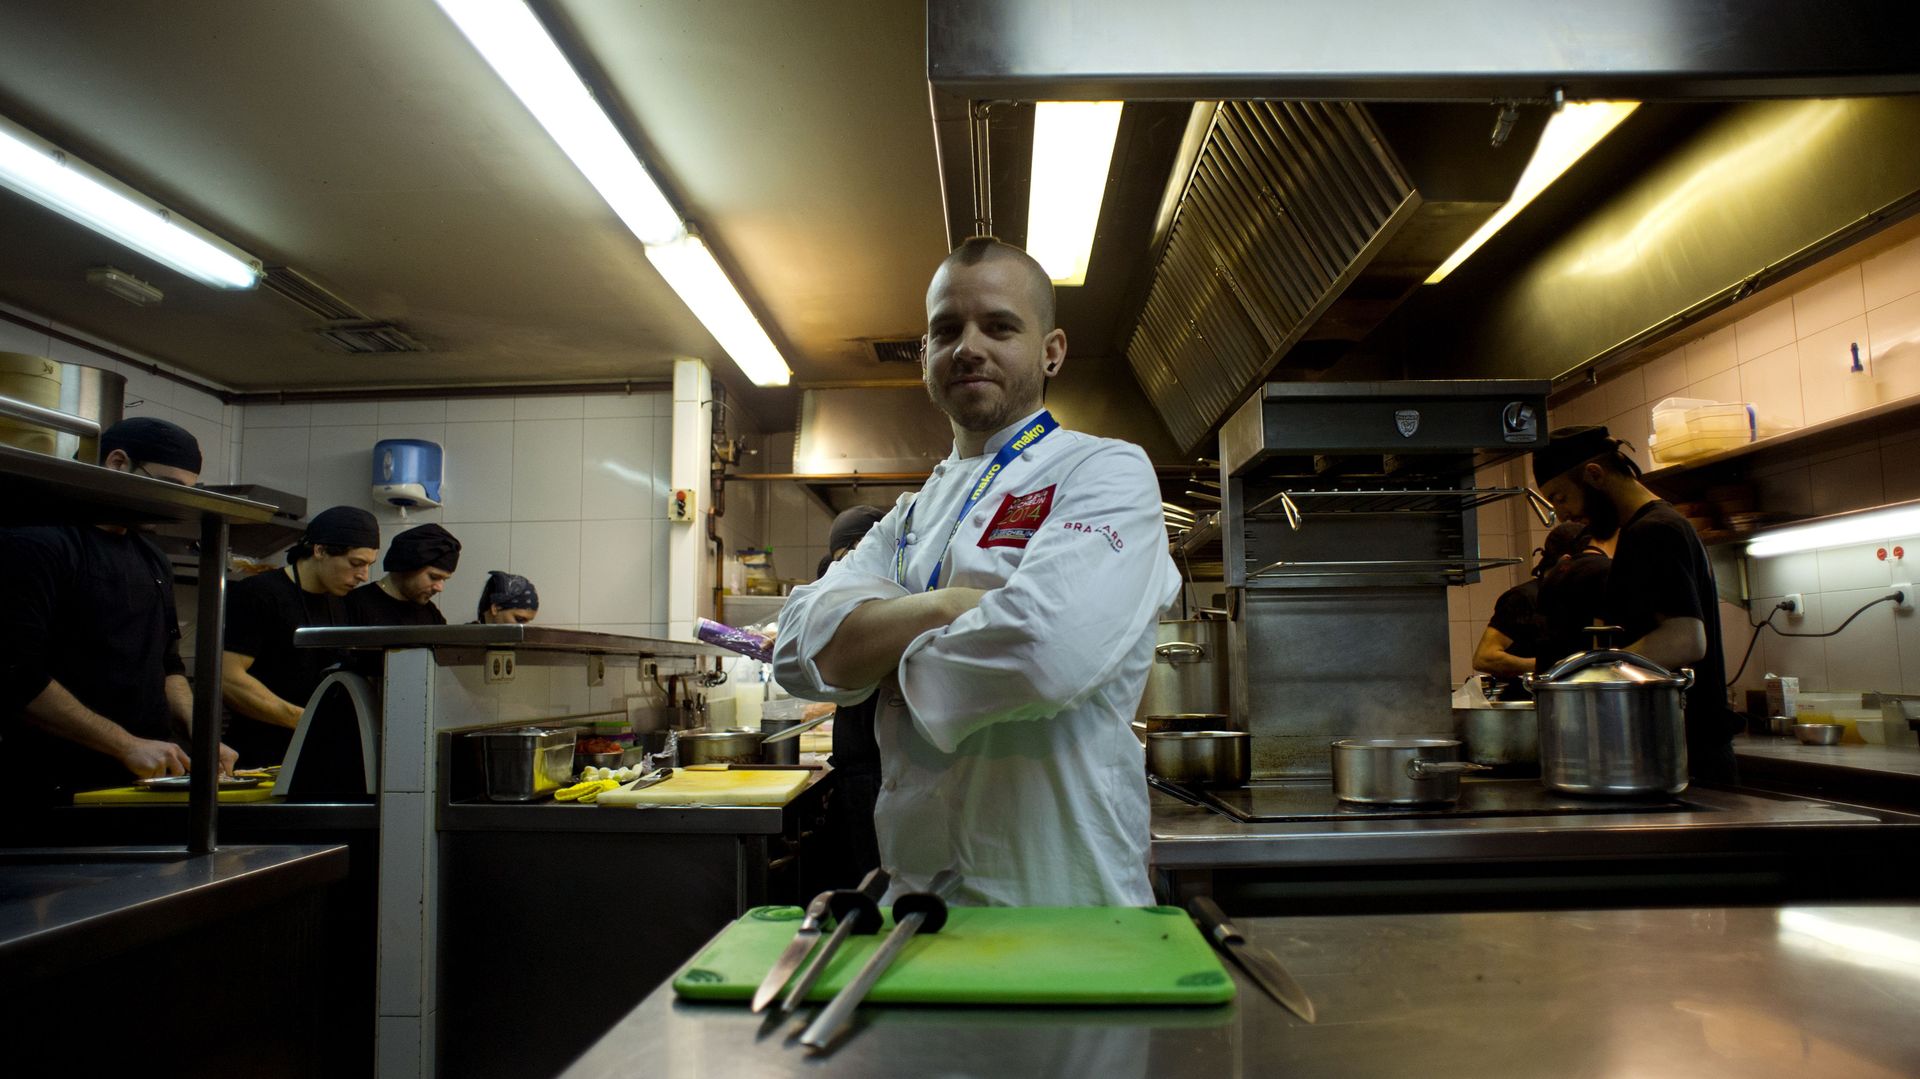 Le jeune chef David Munoz est l'enfant terrible de la cuisine espagnole